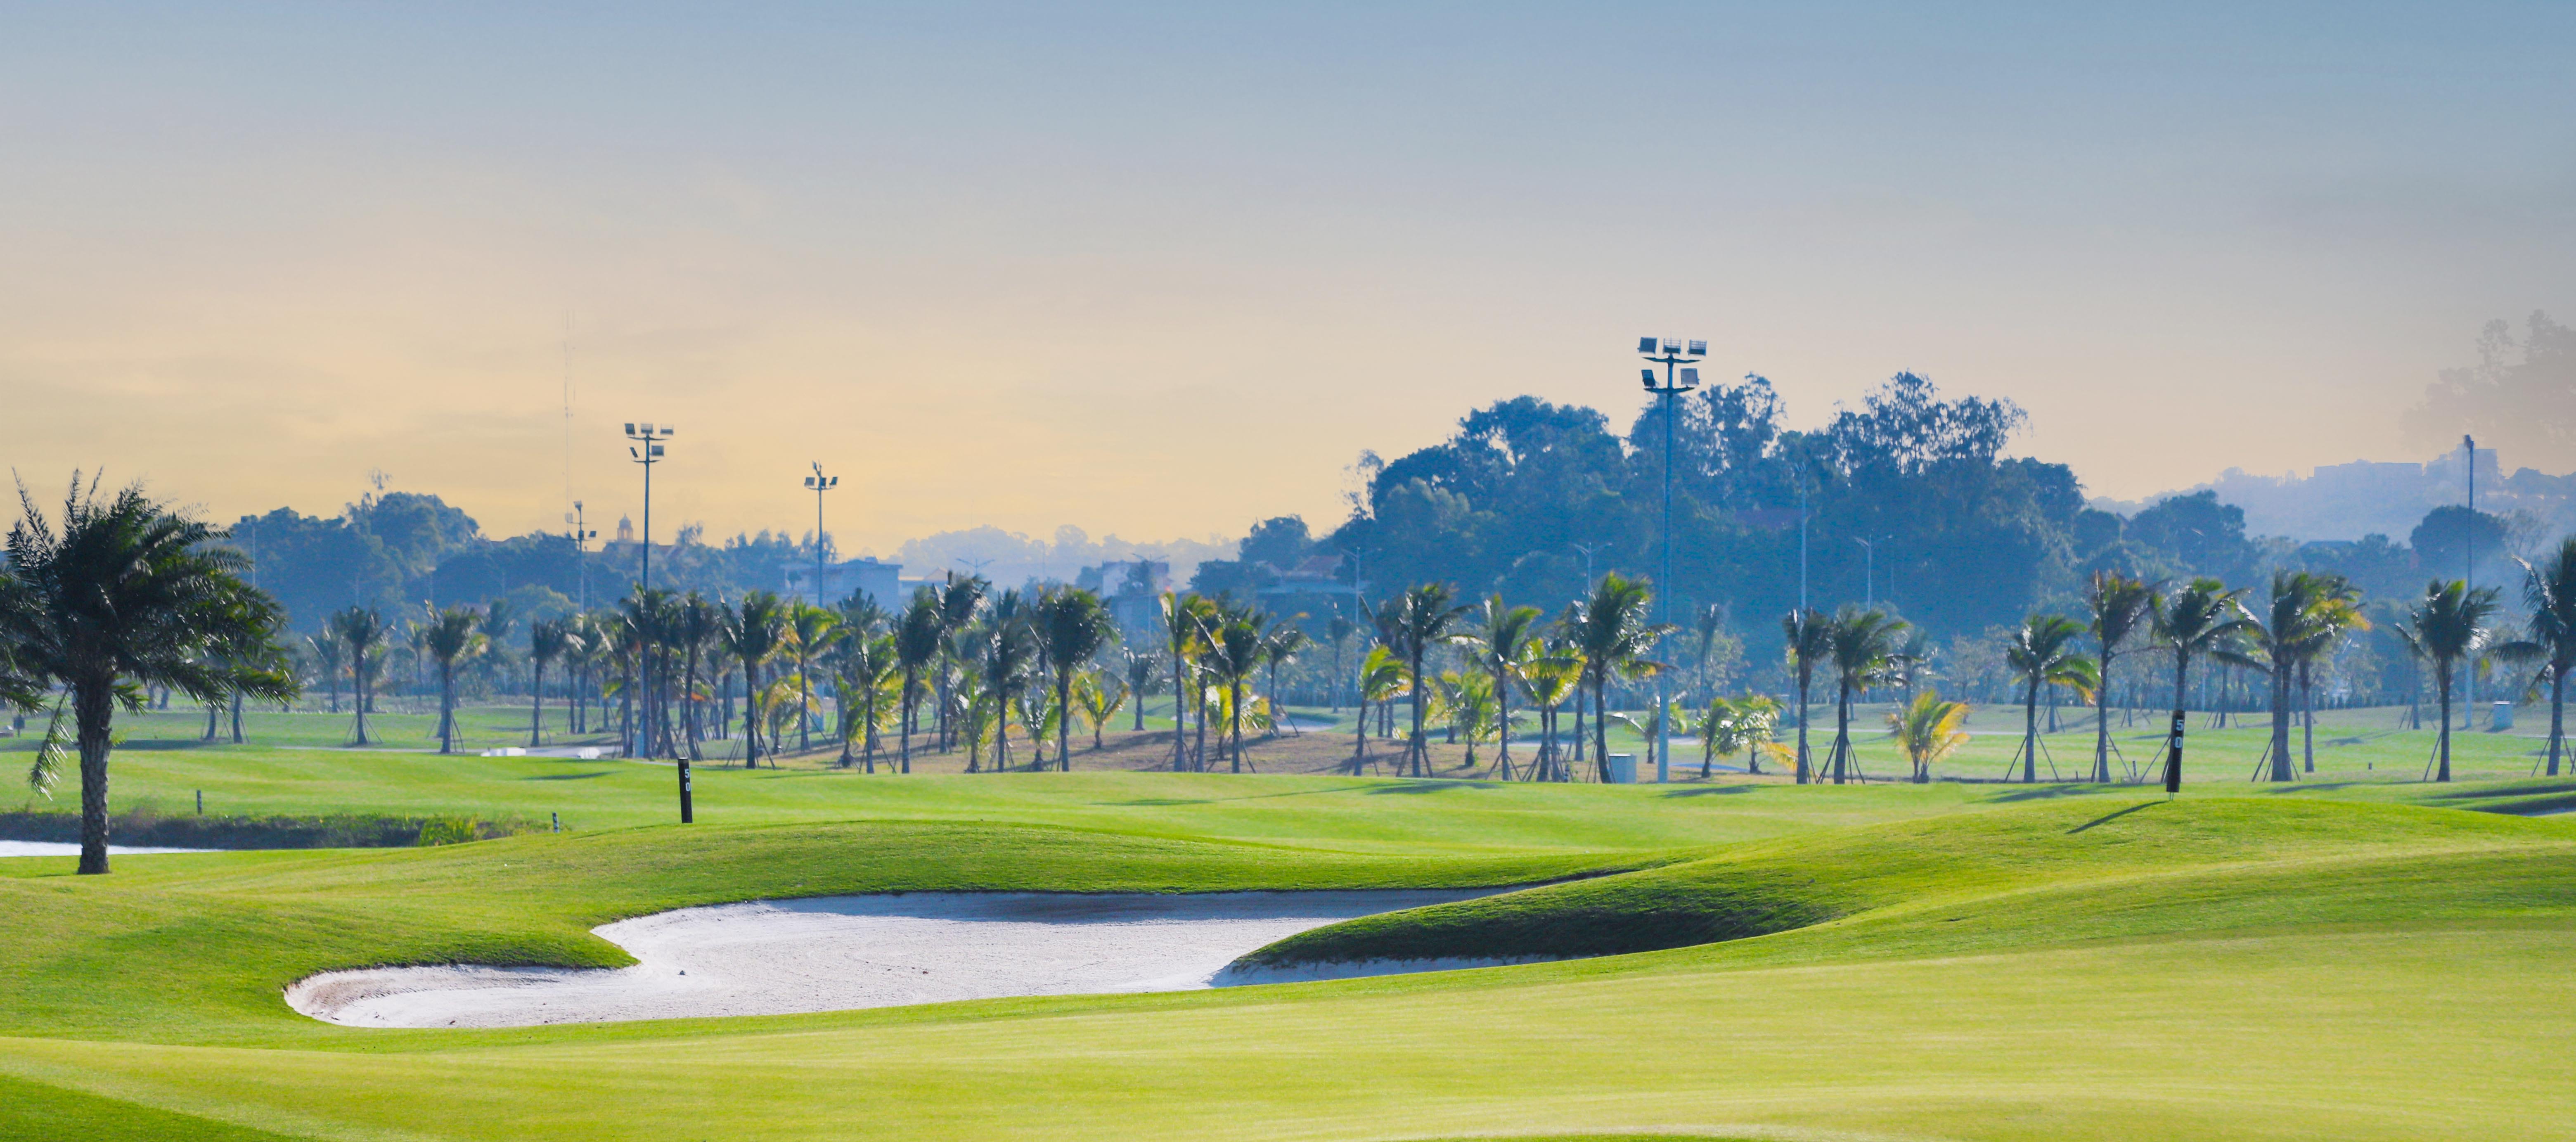 Sân golf Tuần Châu - Sân golf 18 hố lớn nhất tỉnh Quảng Ninh